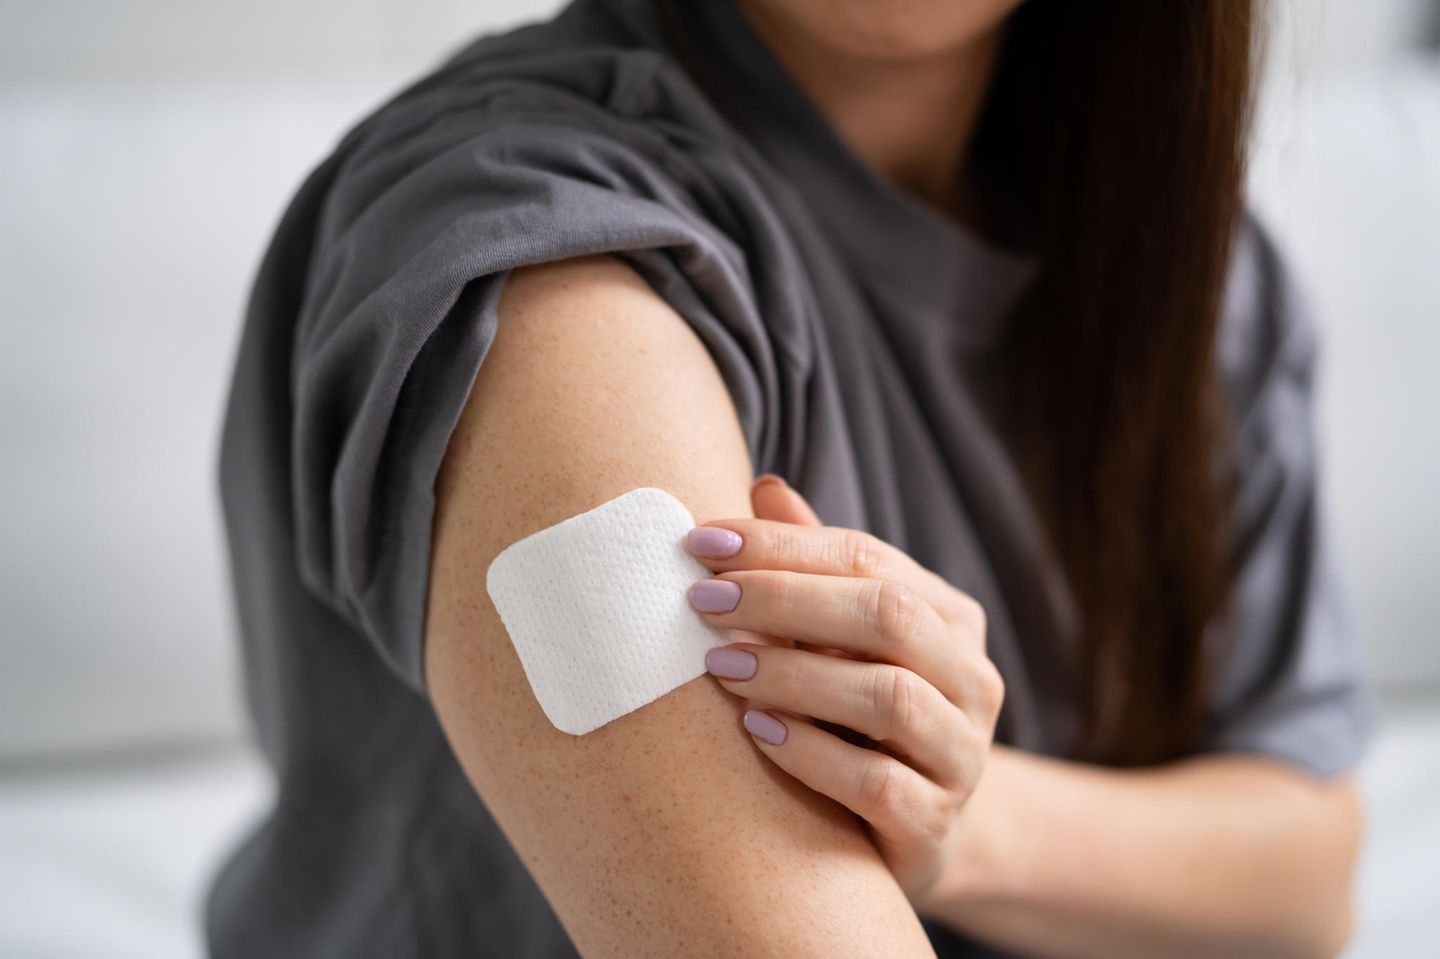 Hormonersatzherapie: Eine Frau im grauen T-Shirt befestigt ein Hormonpflaster auf ihrem Oberarm